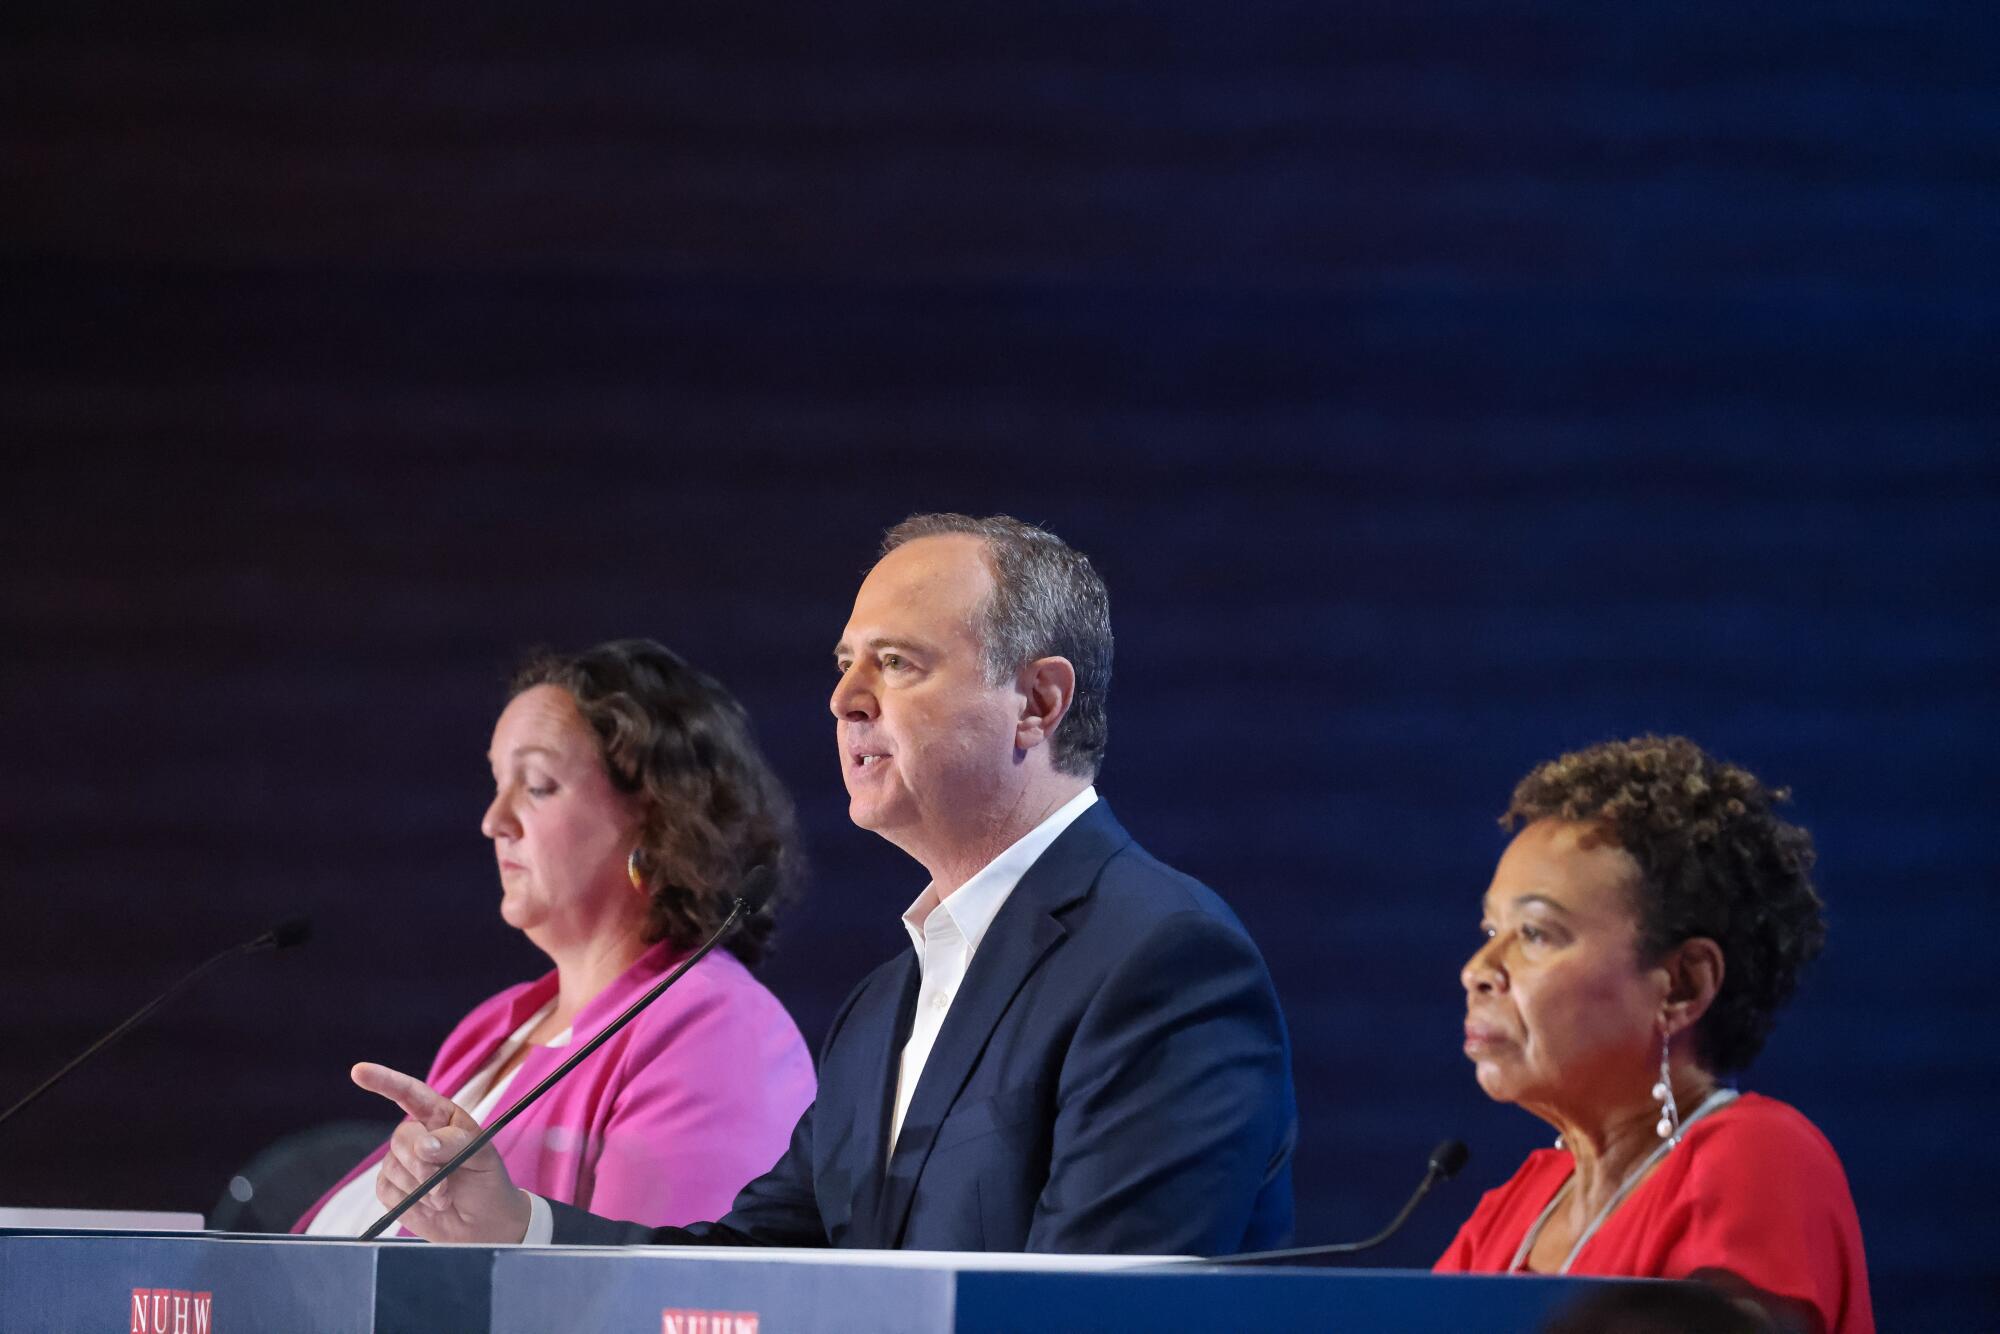 Tres candidatos se encuentran frente al podio durante el debate.